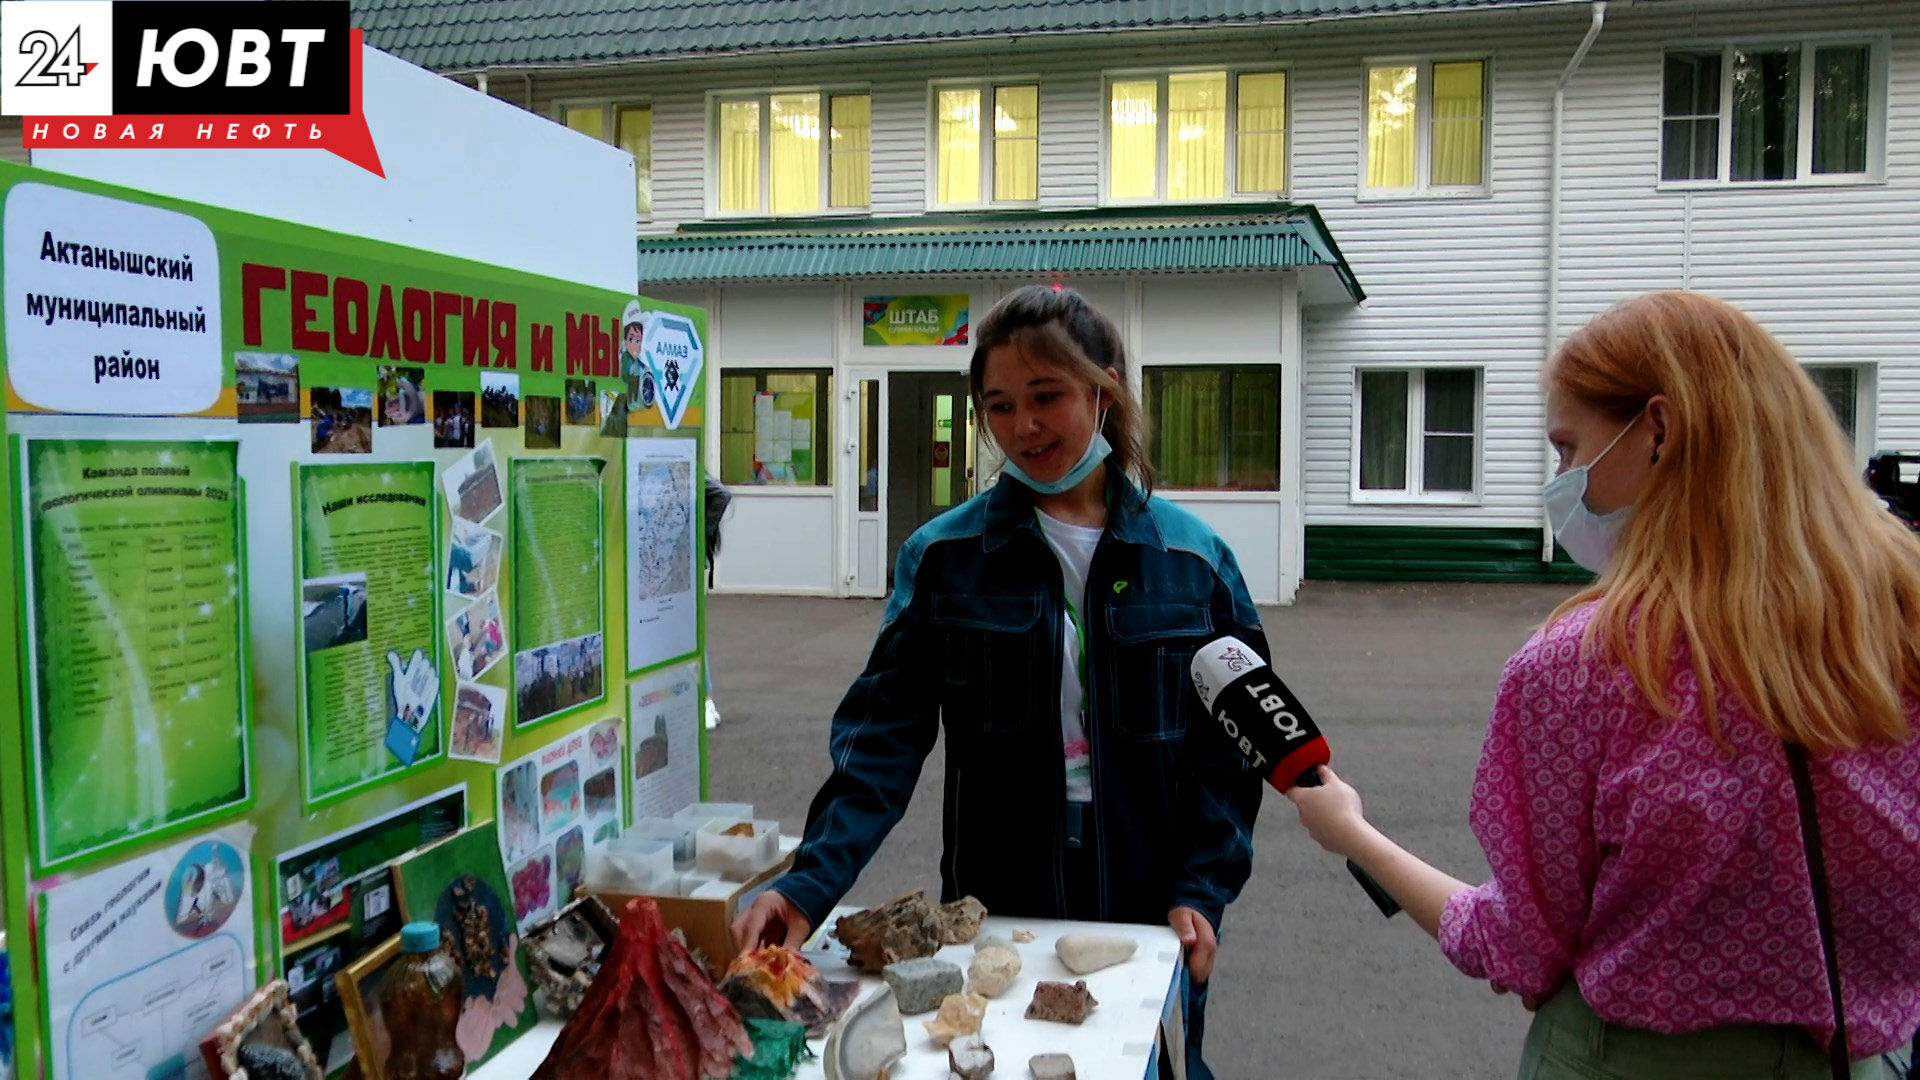 Более двухсот школьников со всего Татарстана приехали на олимпиаду юных геологов в Альметьевск